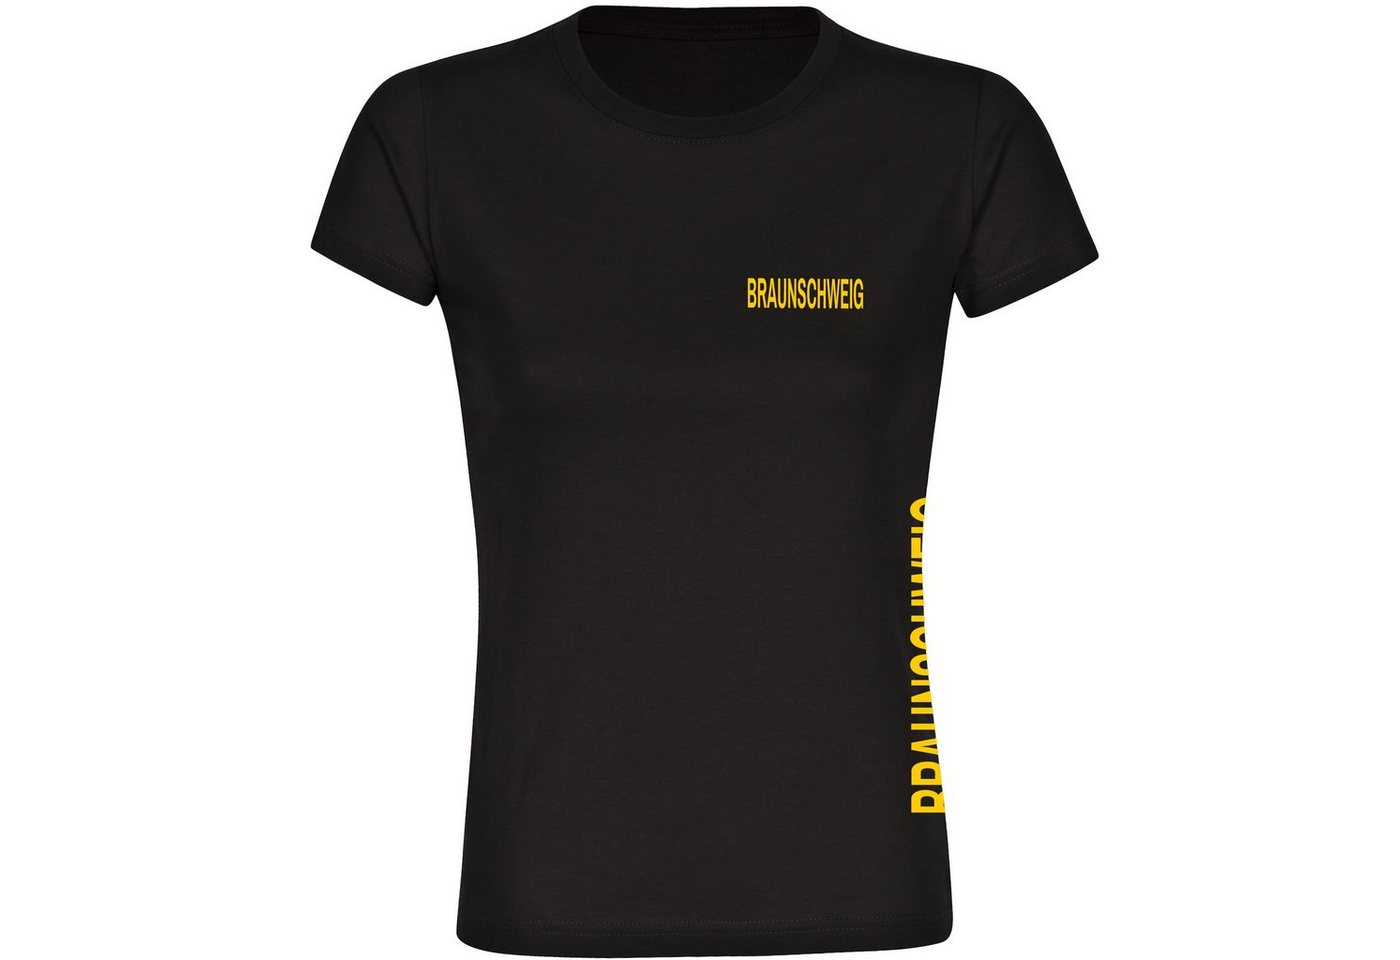 multifanshop T-Shirt Damen Braunschweig - Brust & Seite - Frauen von multifanshop